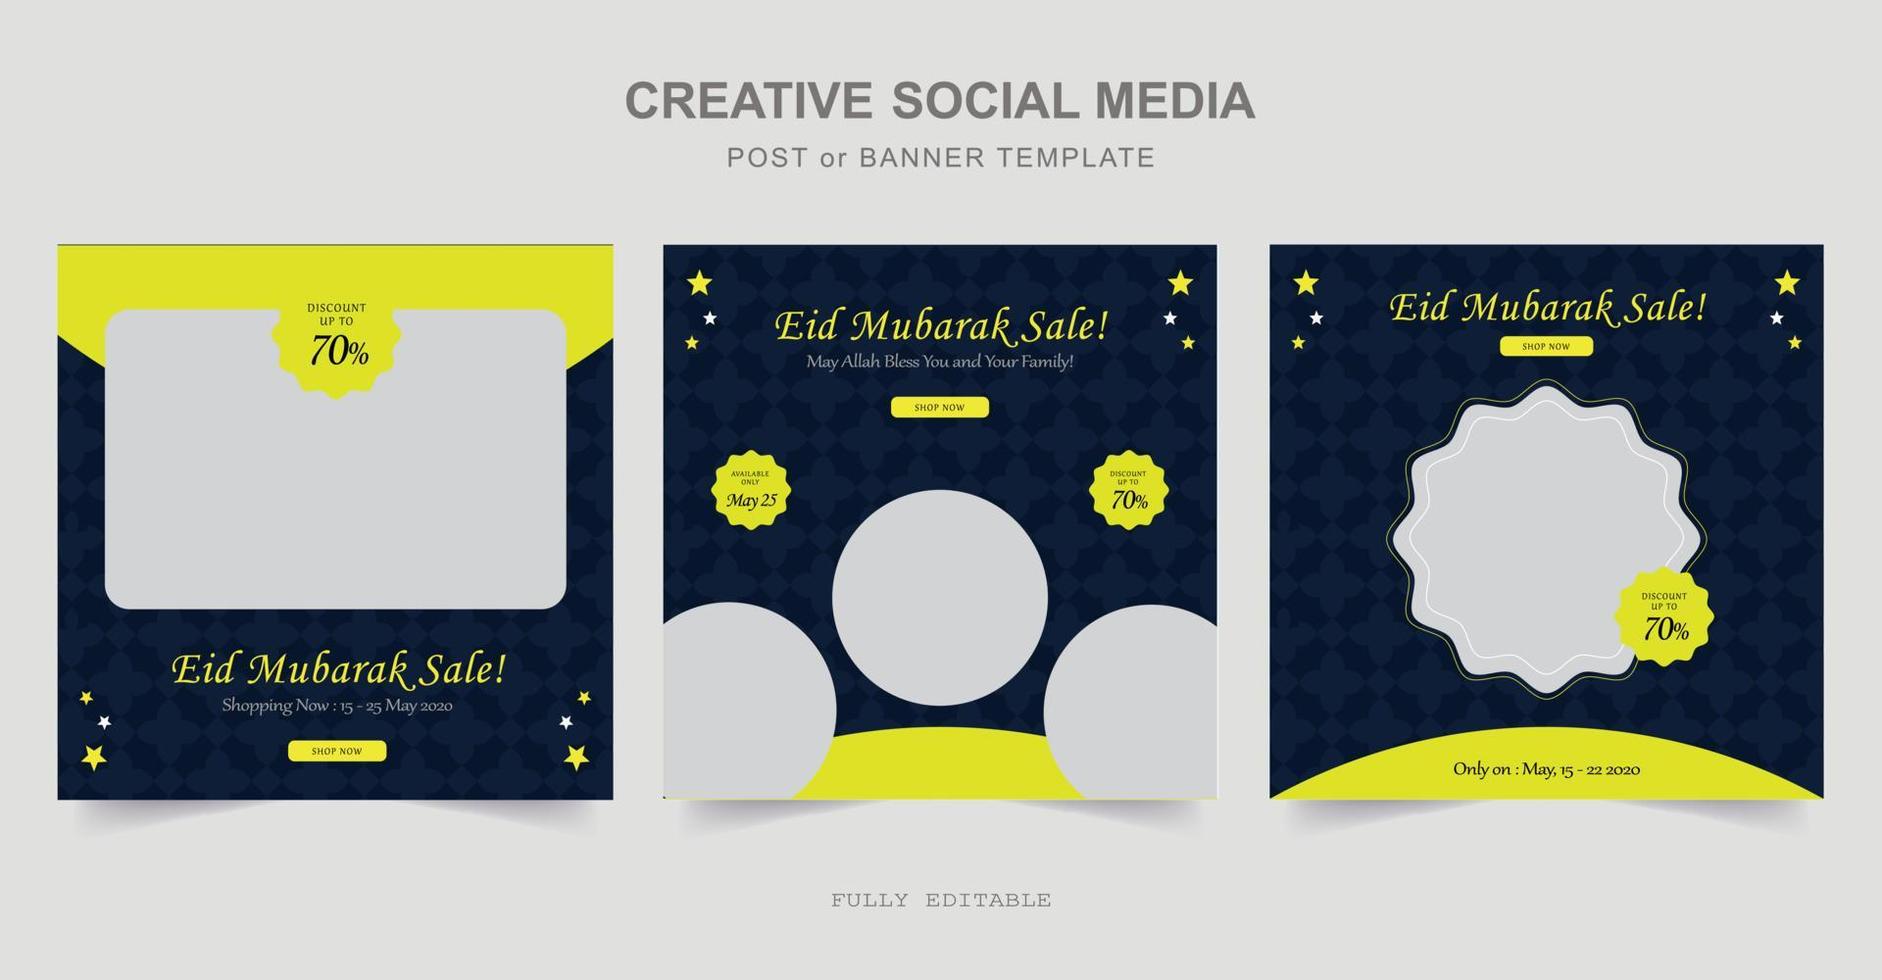 progettazione di post sui social media del ramadan. un buon modello per la pubblicità sui social media. perfetto per post sui social media, sfondo e annunci Internet banner web. vettore